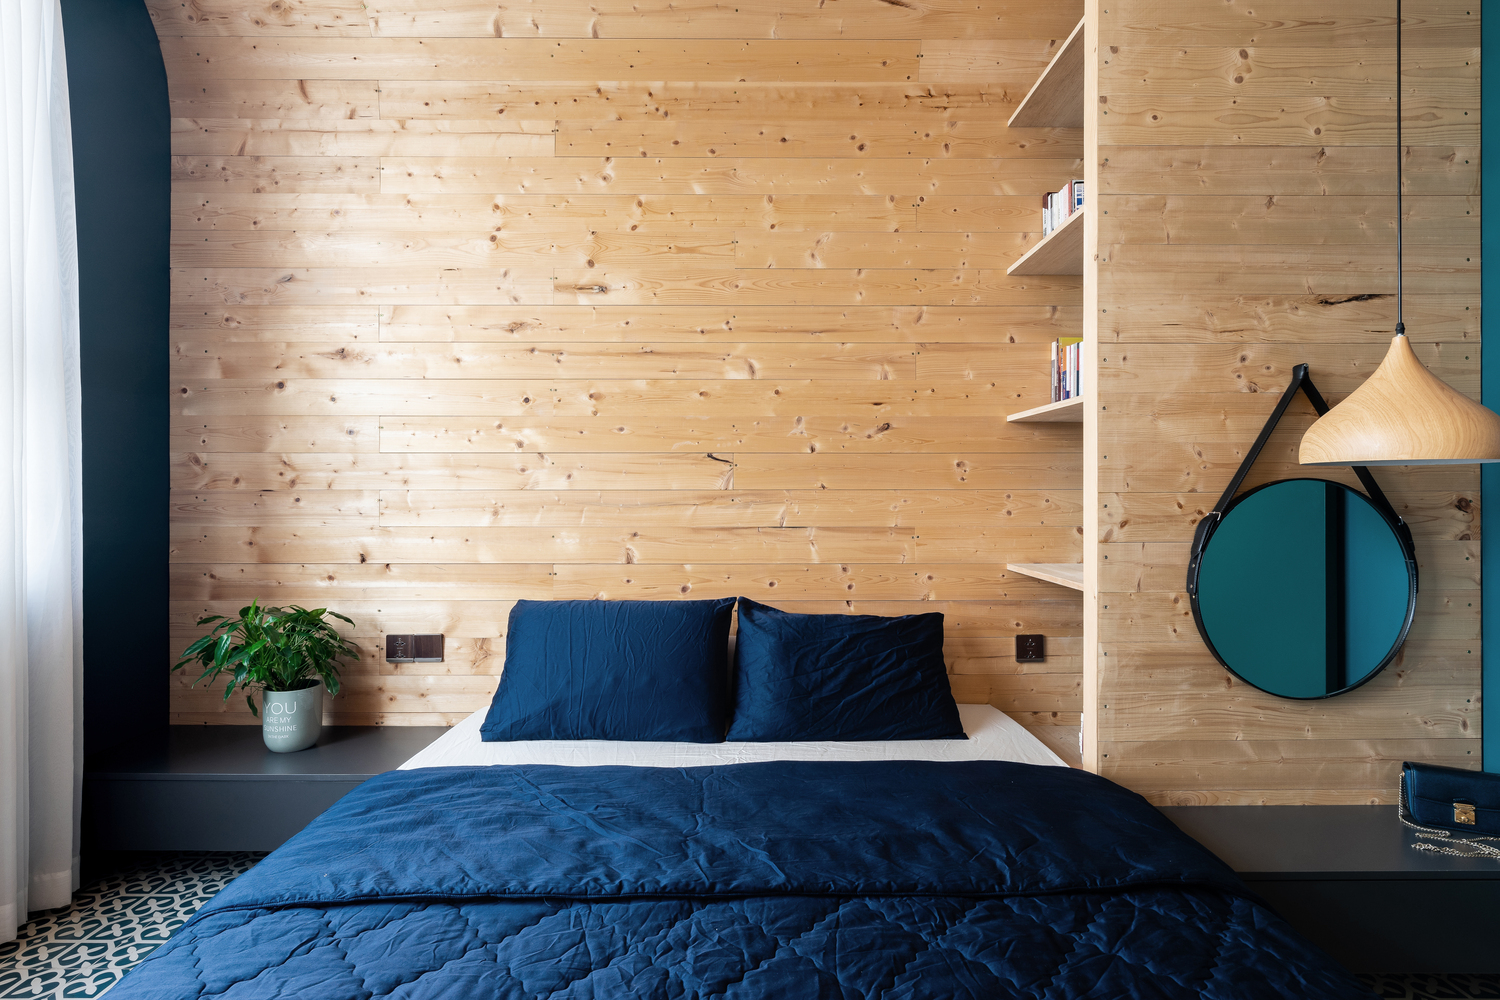 Phòng ngủ được thiết kế theo phong cách tối giản với điểm nhấn là gương tròn và đèn thả